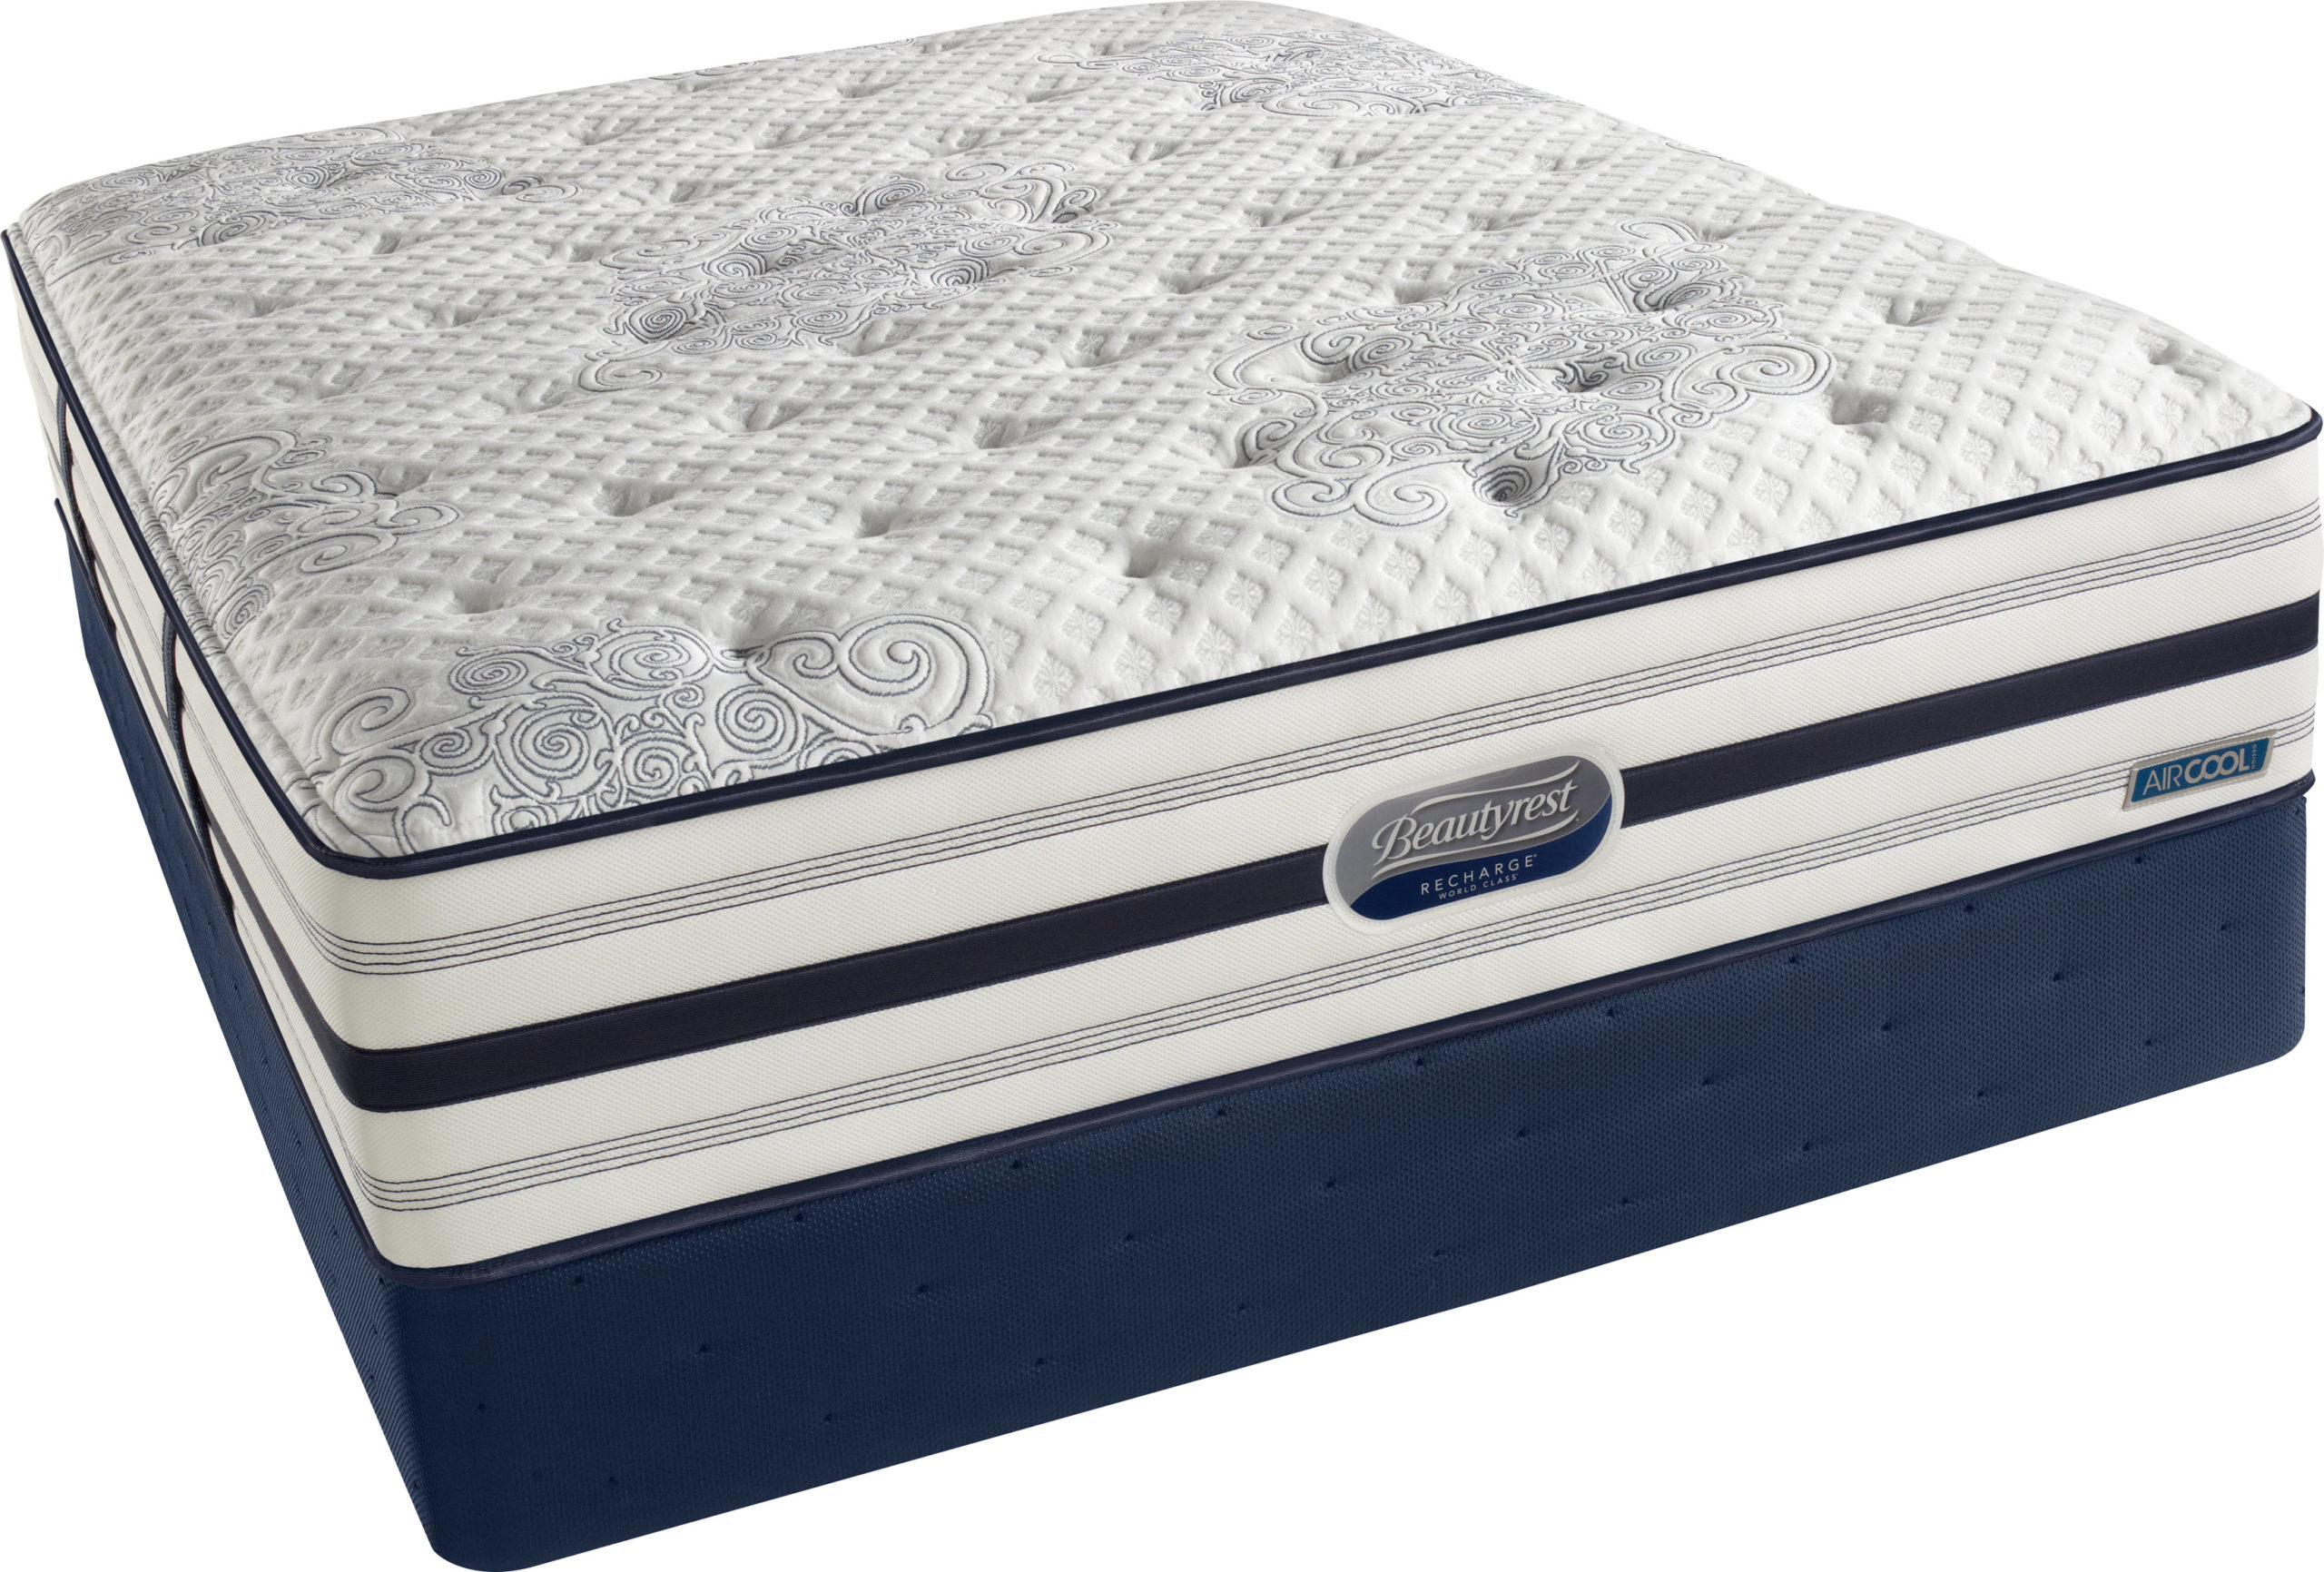 sleeping beauty statesman firm mattress